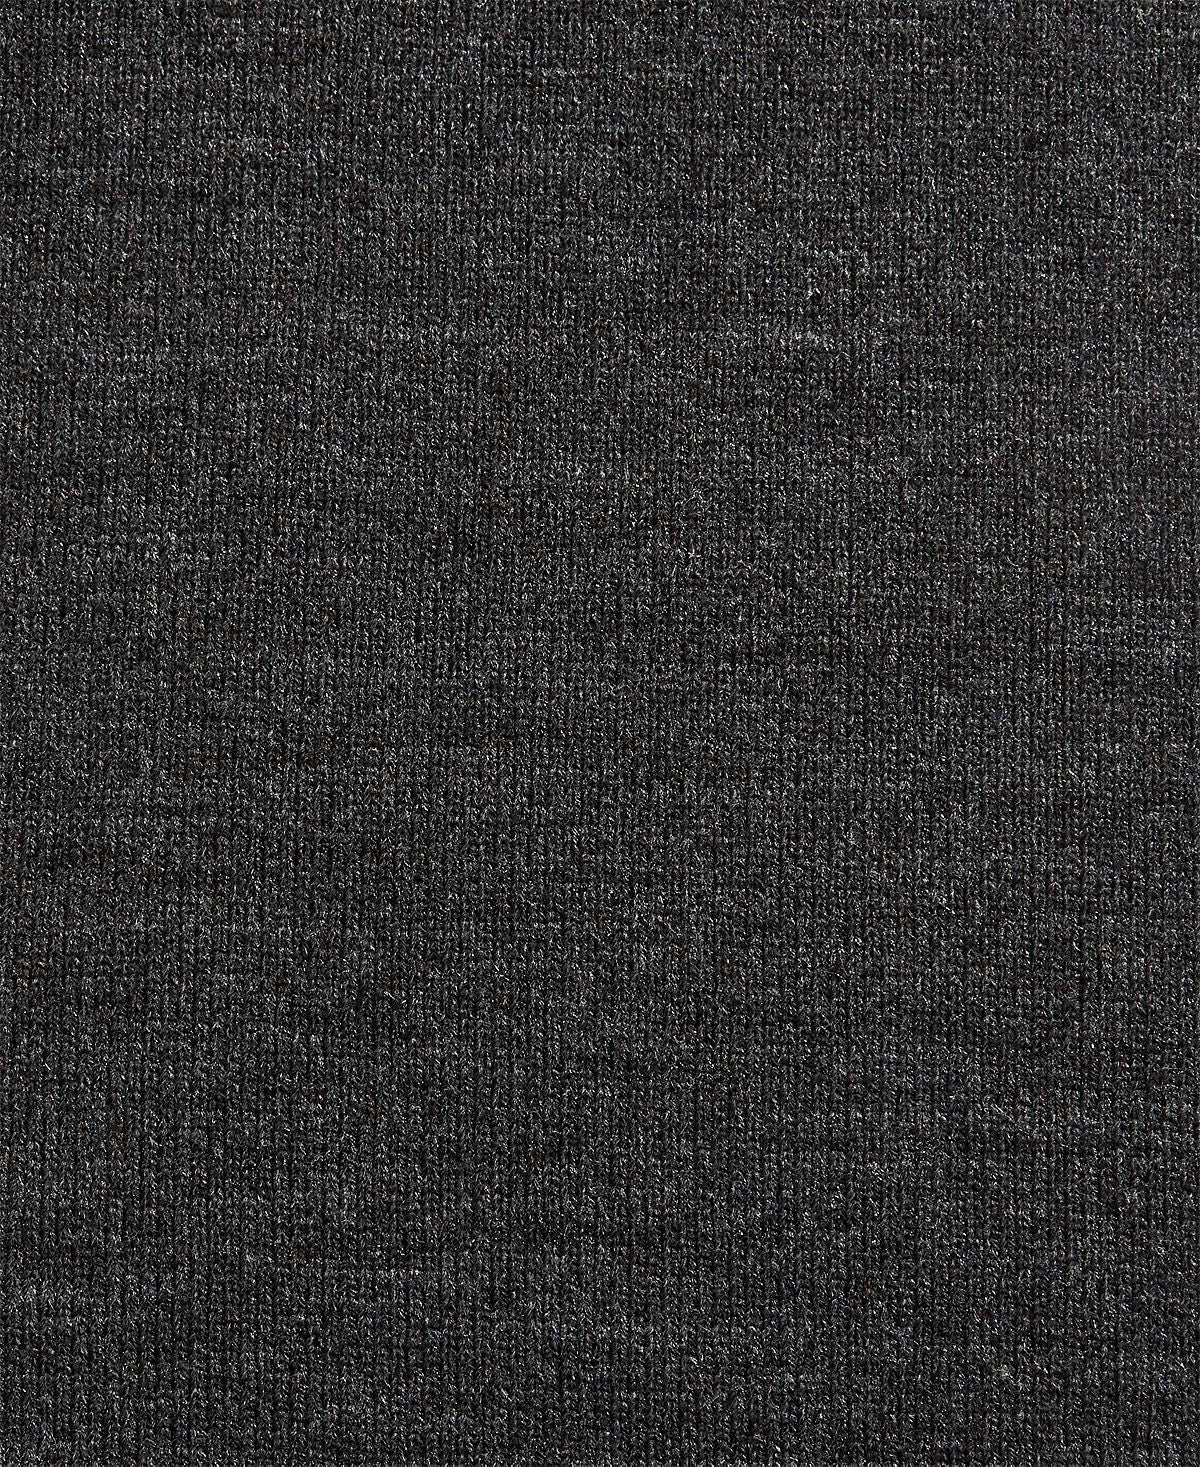 Alfani Colorblocked Blanket Scarf Purple Black